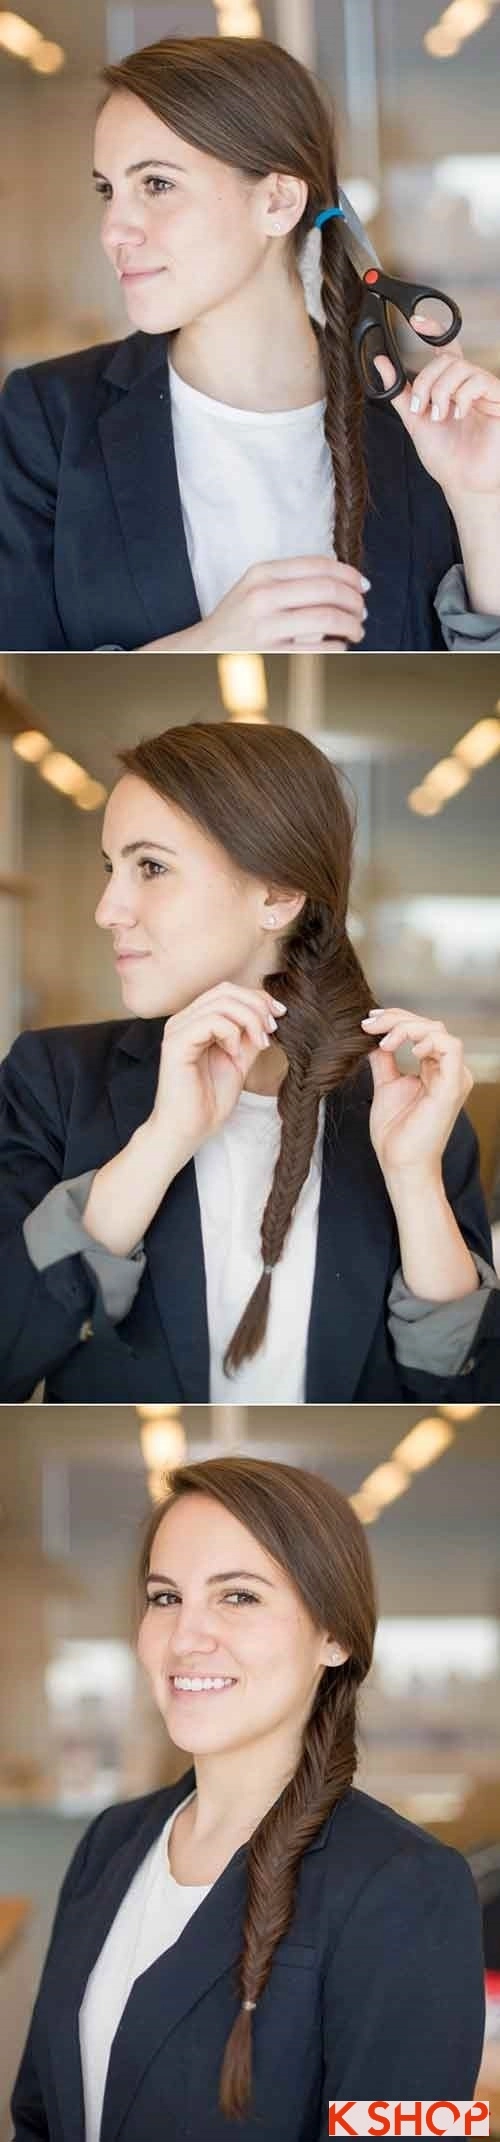 Những kiểu tóc đẹp đơn giản cho bạn gái tới công sở - 7